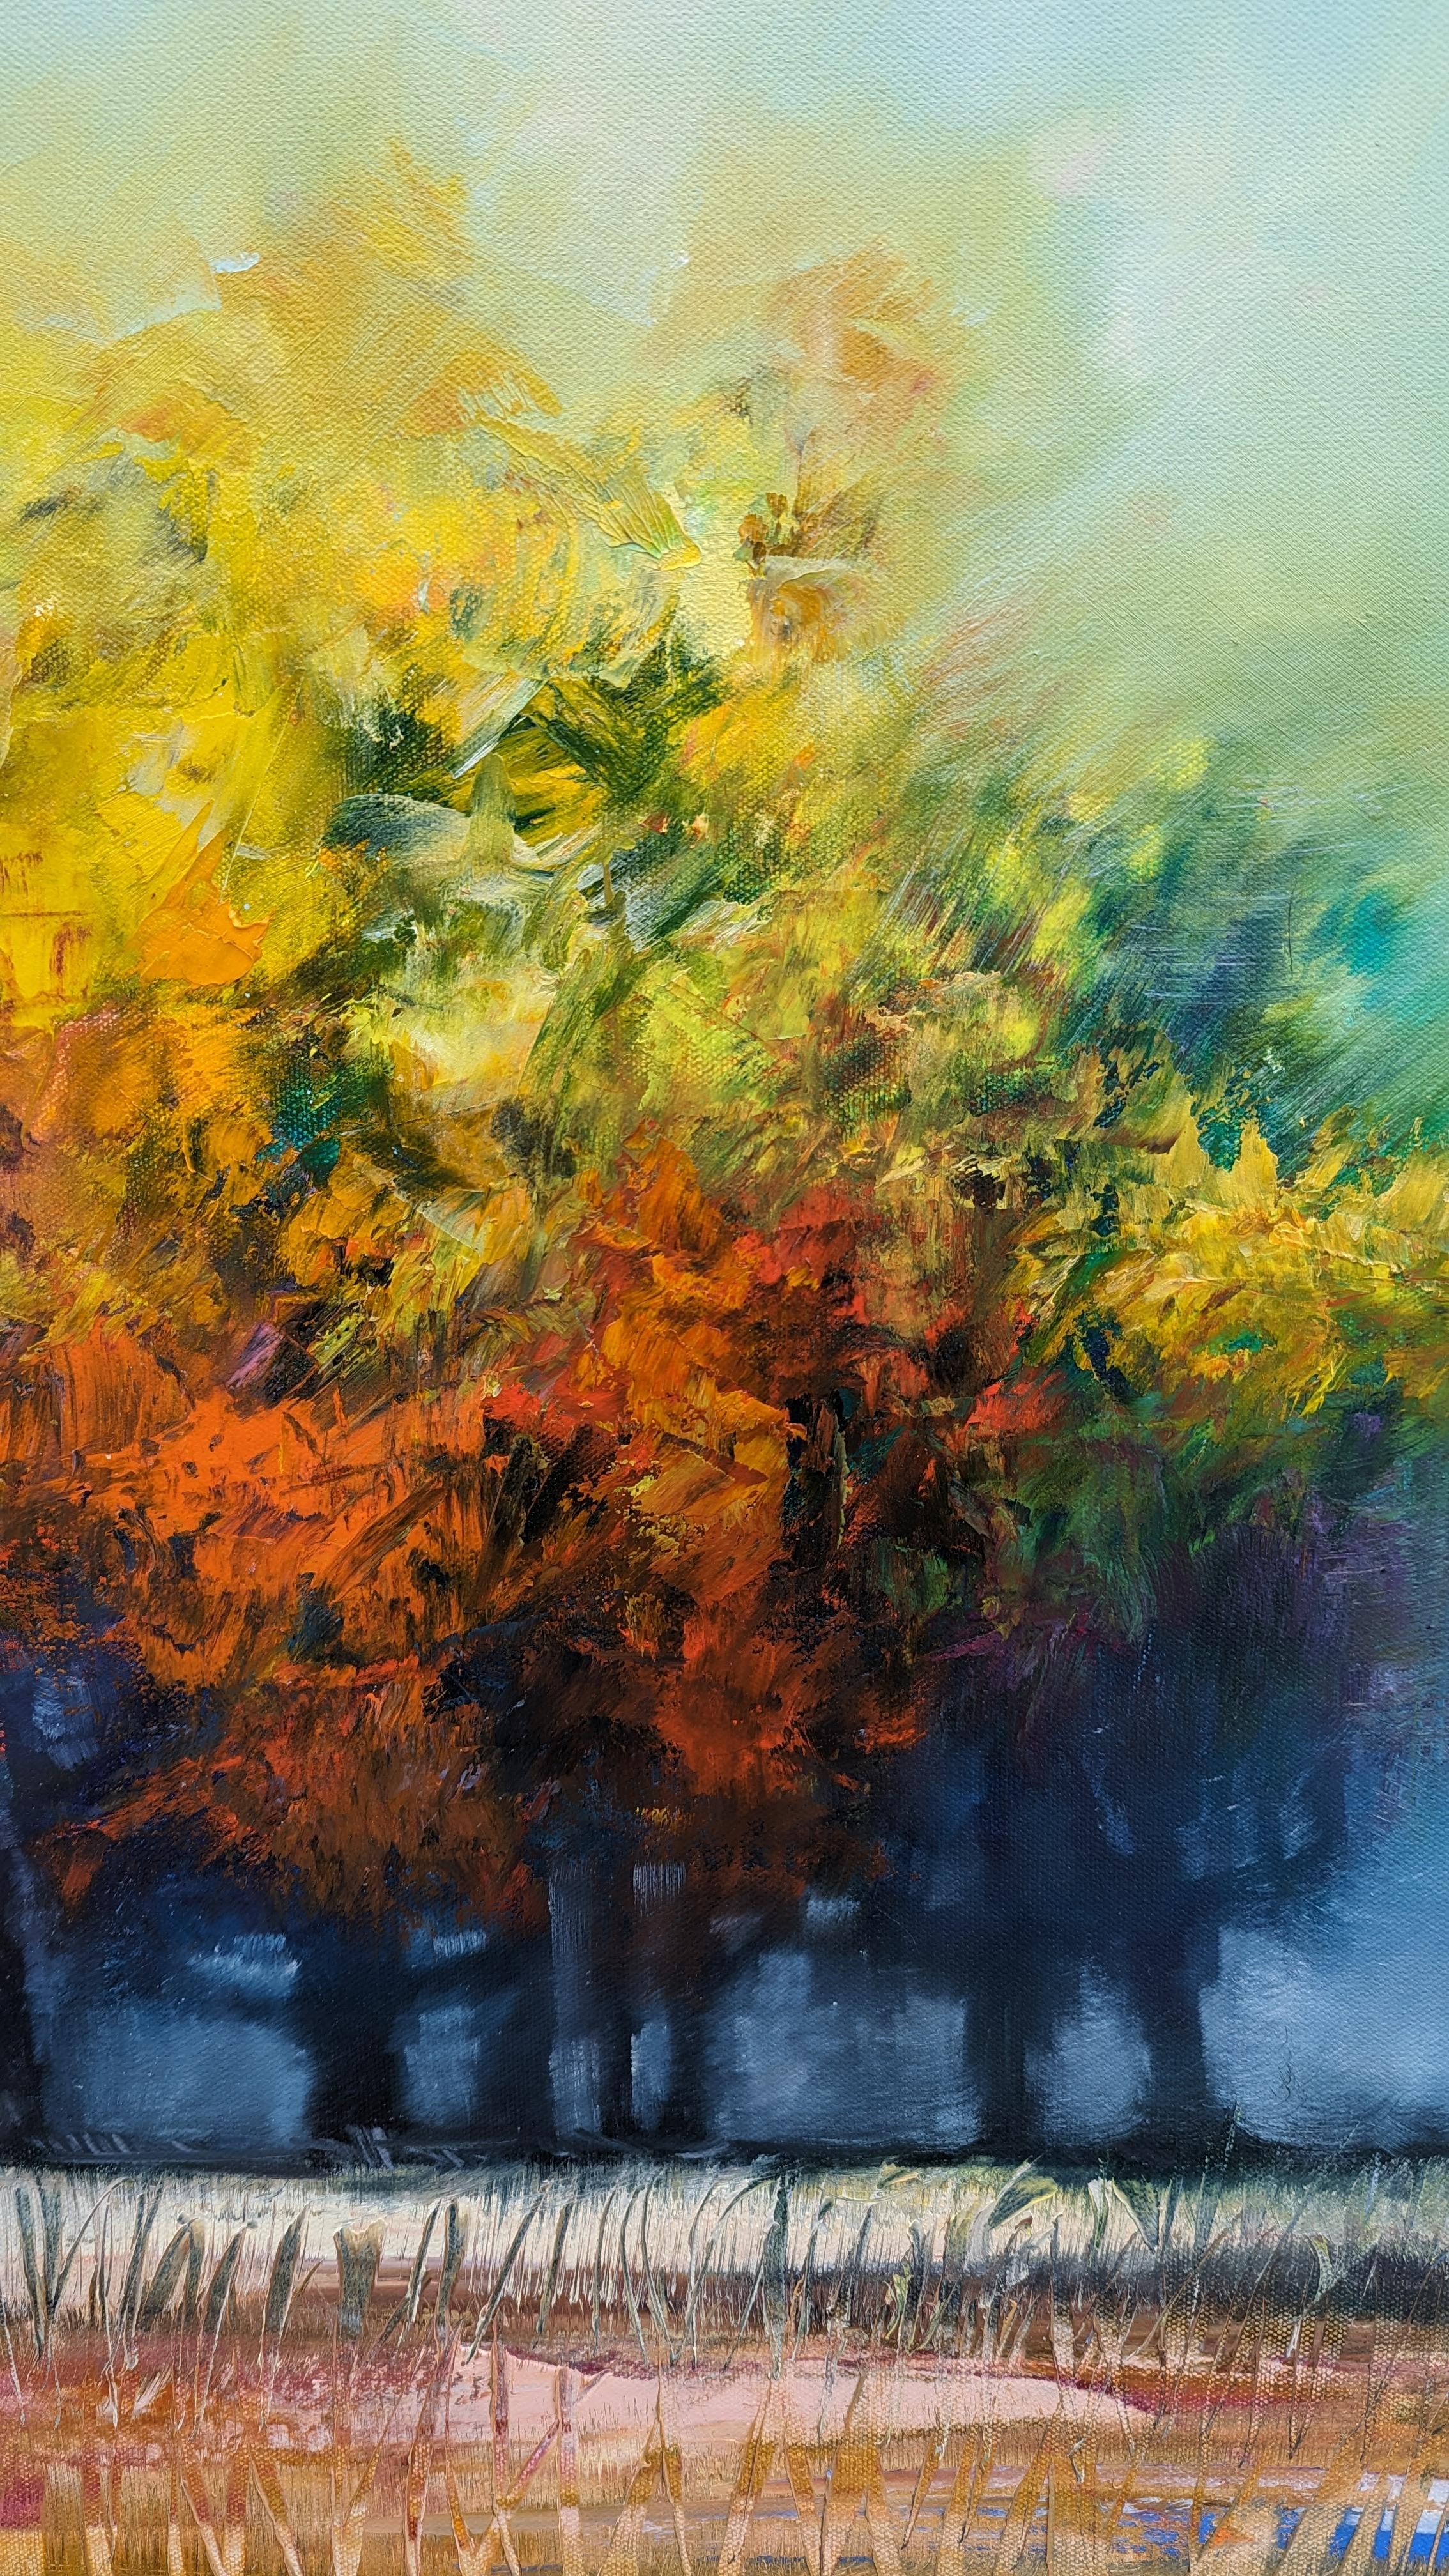 <p>Kommentare des Künstlers<br>Eine Gruppe von Bäumen steht dicht beieinander, ihre herbstlich gefärbten Baumkronen verschmelzen zu einer Einheit. Ihre dunstige Umgebung spiegelt die Sanftheit der Wolken über ihnen wider. Im Vordergrund wiegen sich